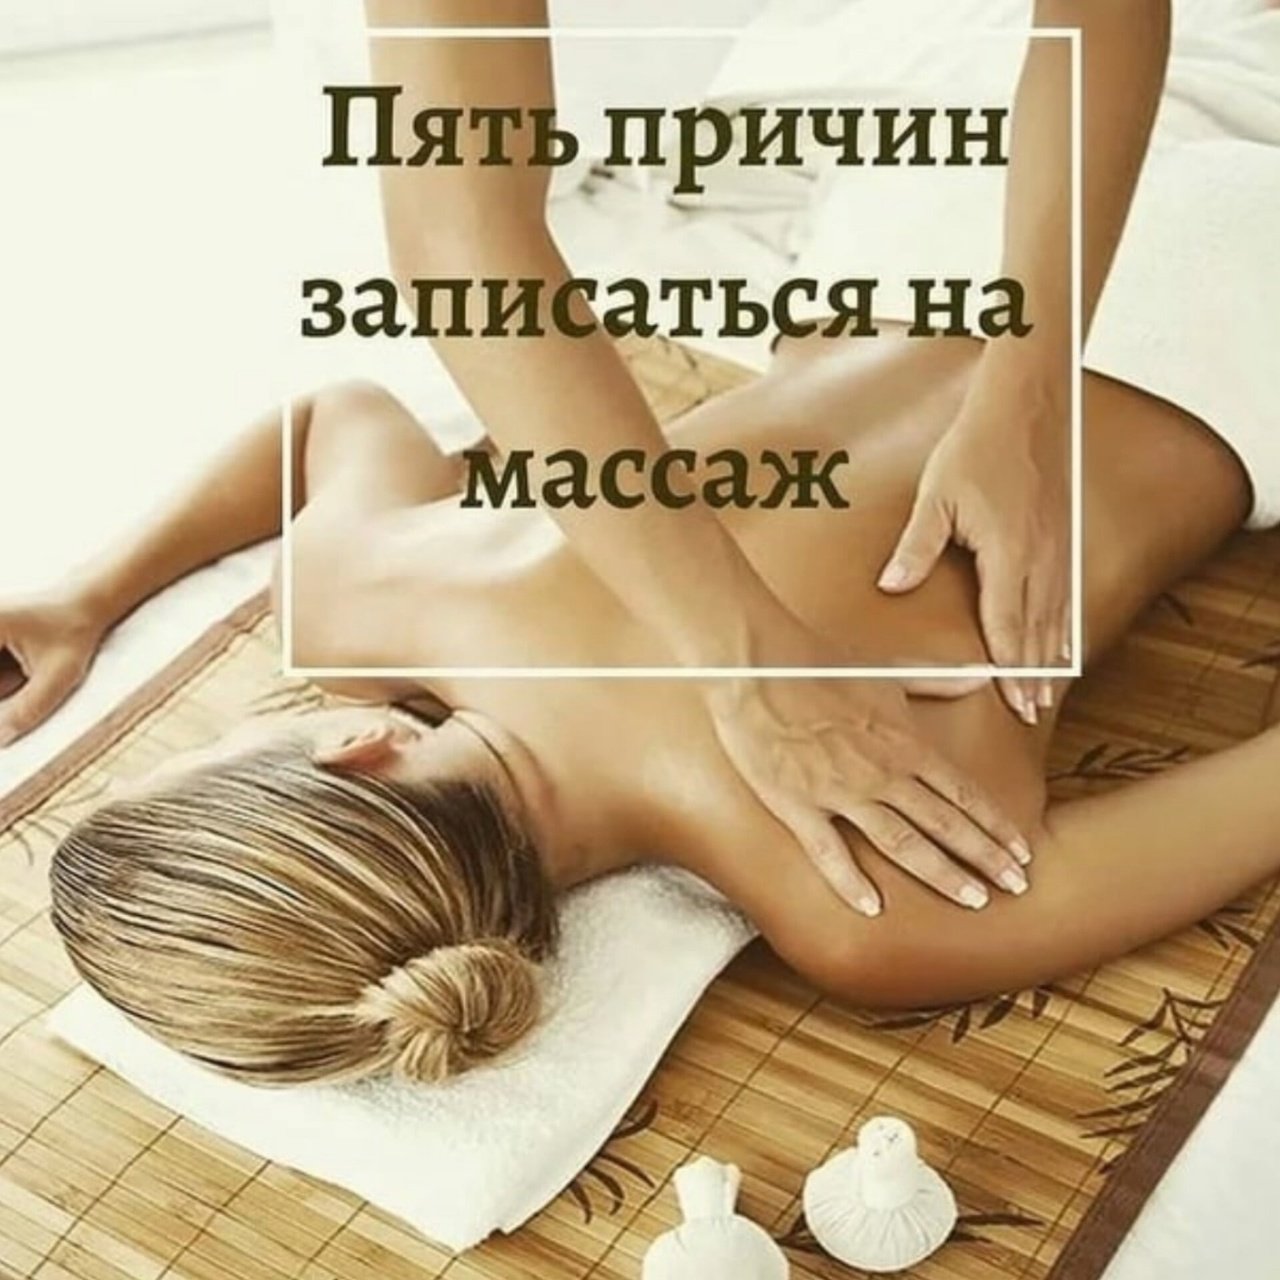 массаж фото для рекламы мужчине